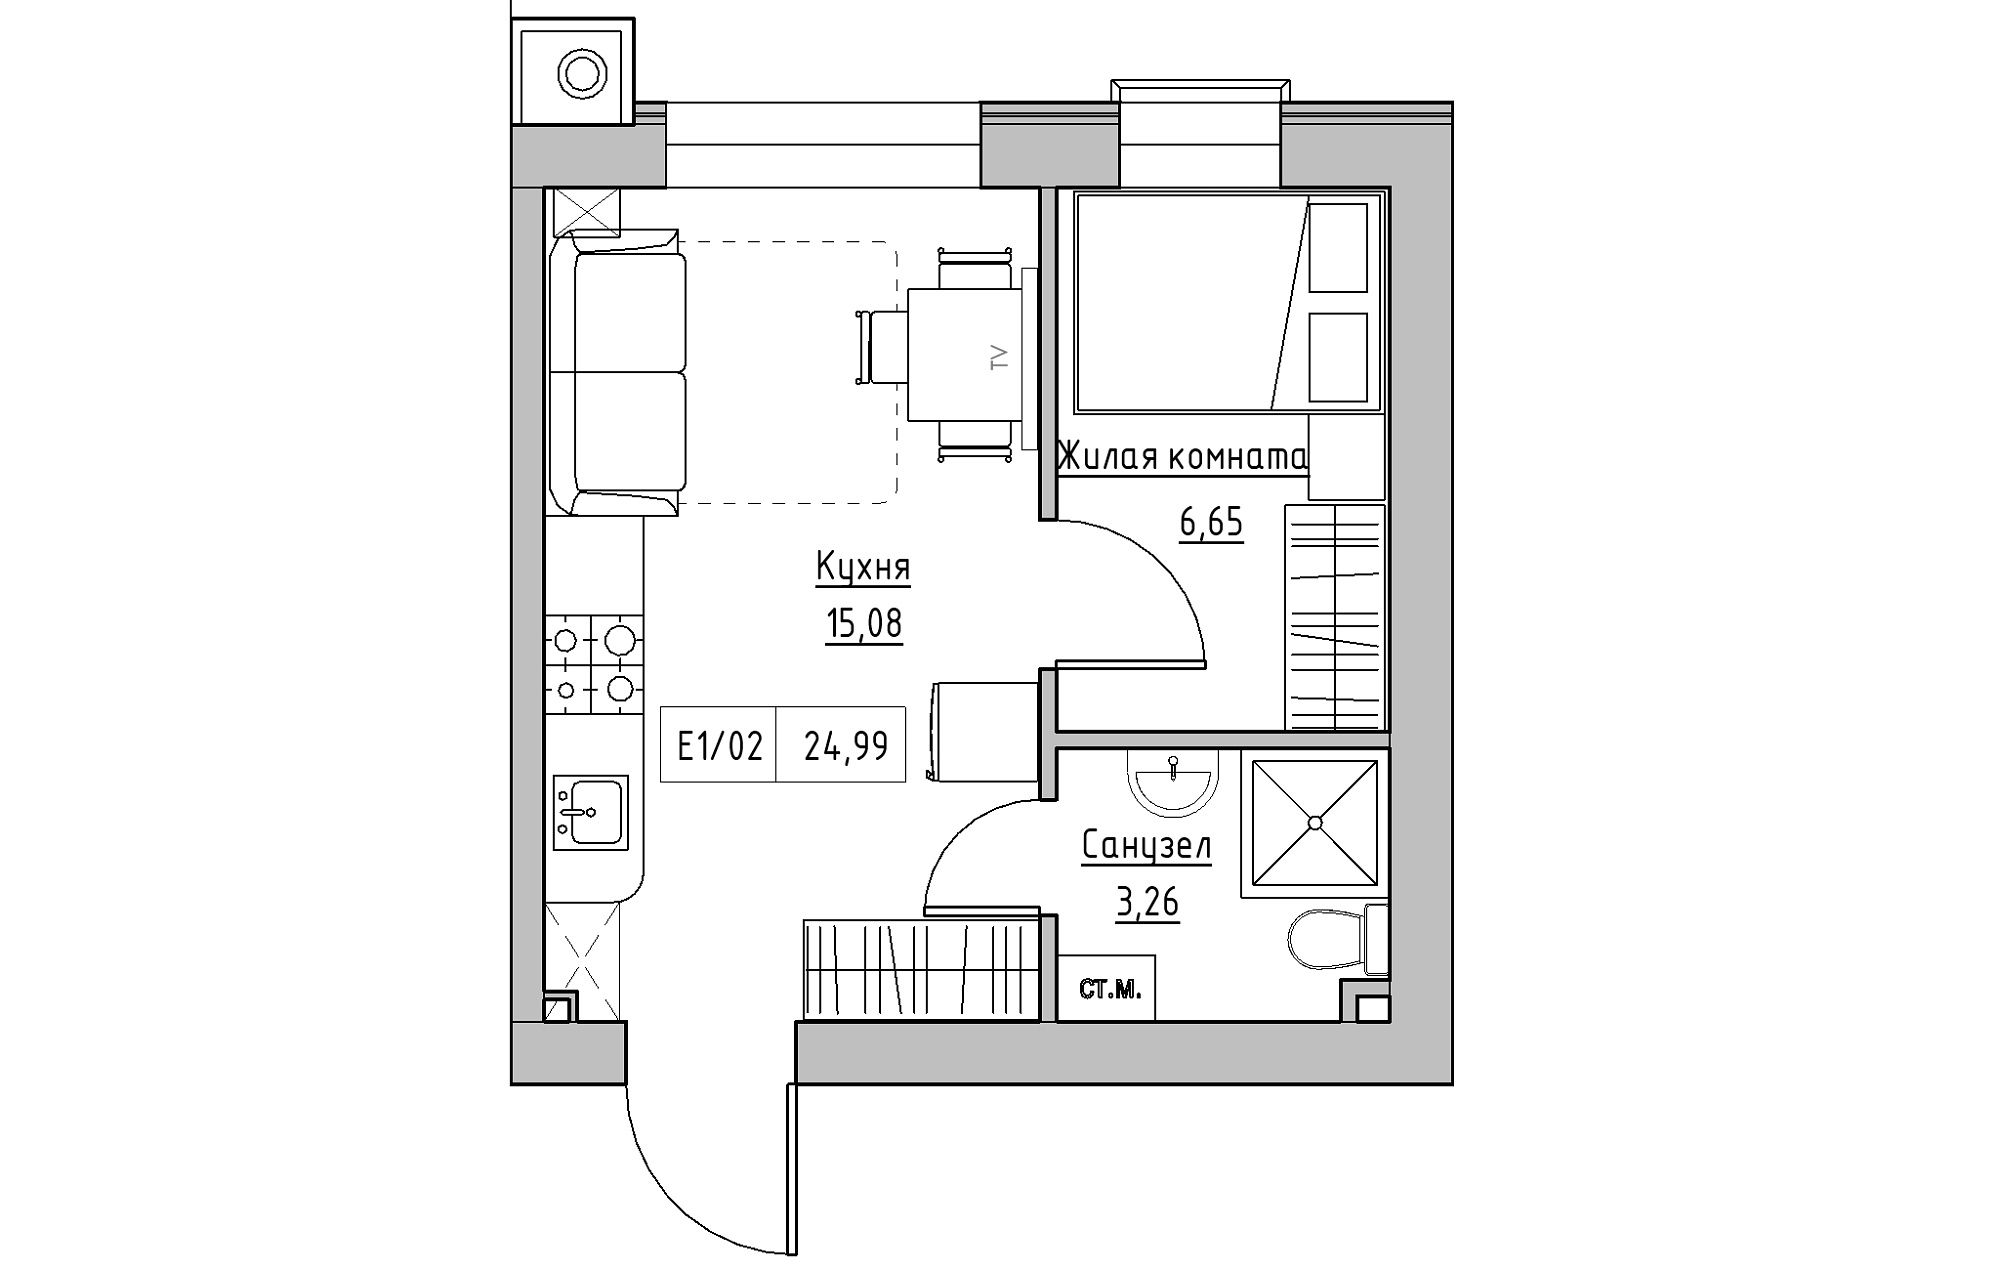 Планування 1-к квартира площею 24.99м2, KS-013-03/0010.